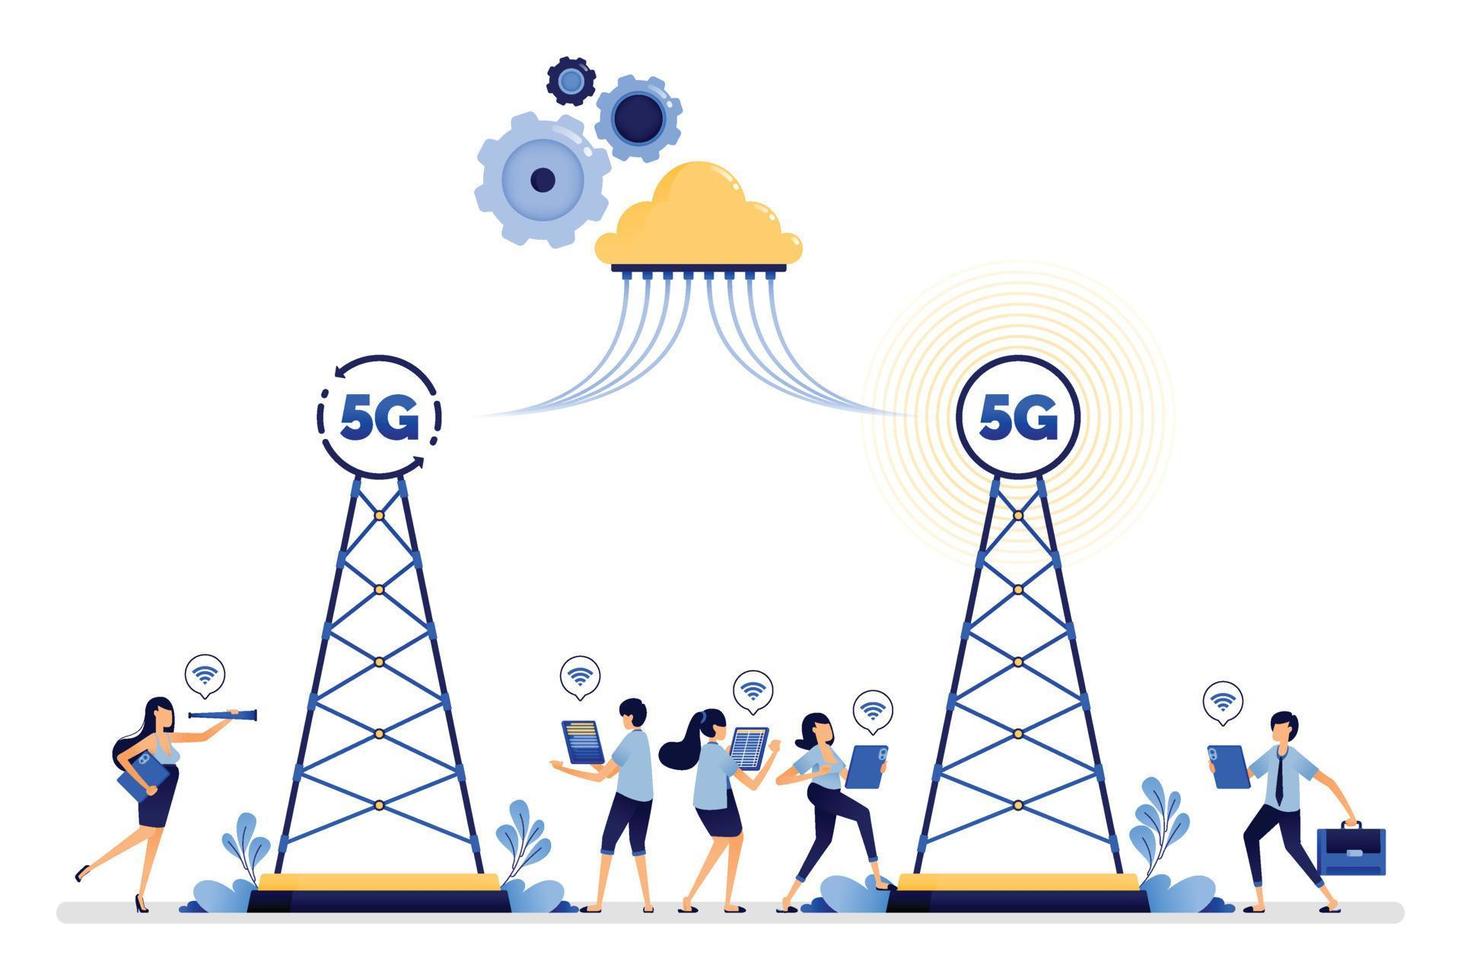 design de ilustração da torre de comunicação instalado sistema de internet 5g se comunicar mais facilmente com nuvem e rede sem fio. vetor pode ser usado para web, site, pôster, aplicativos móveis, anúncios, flyer